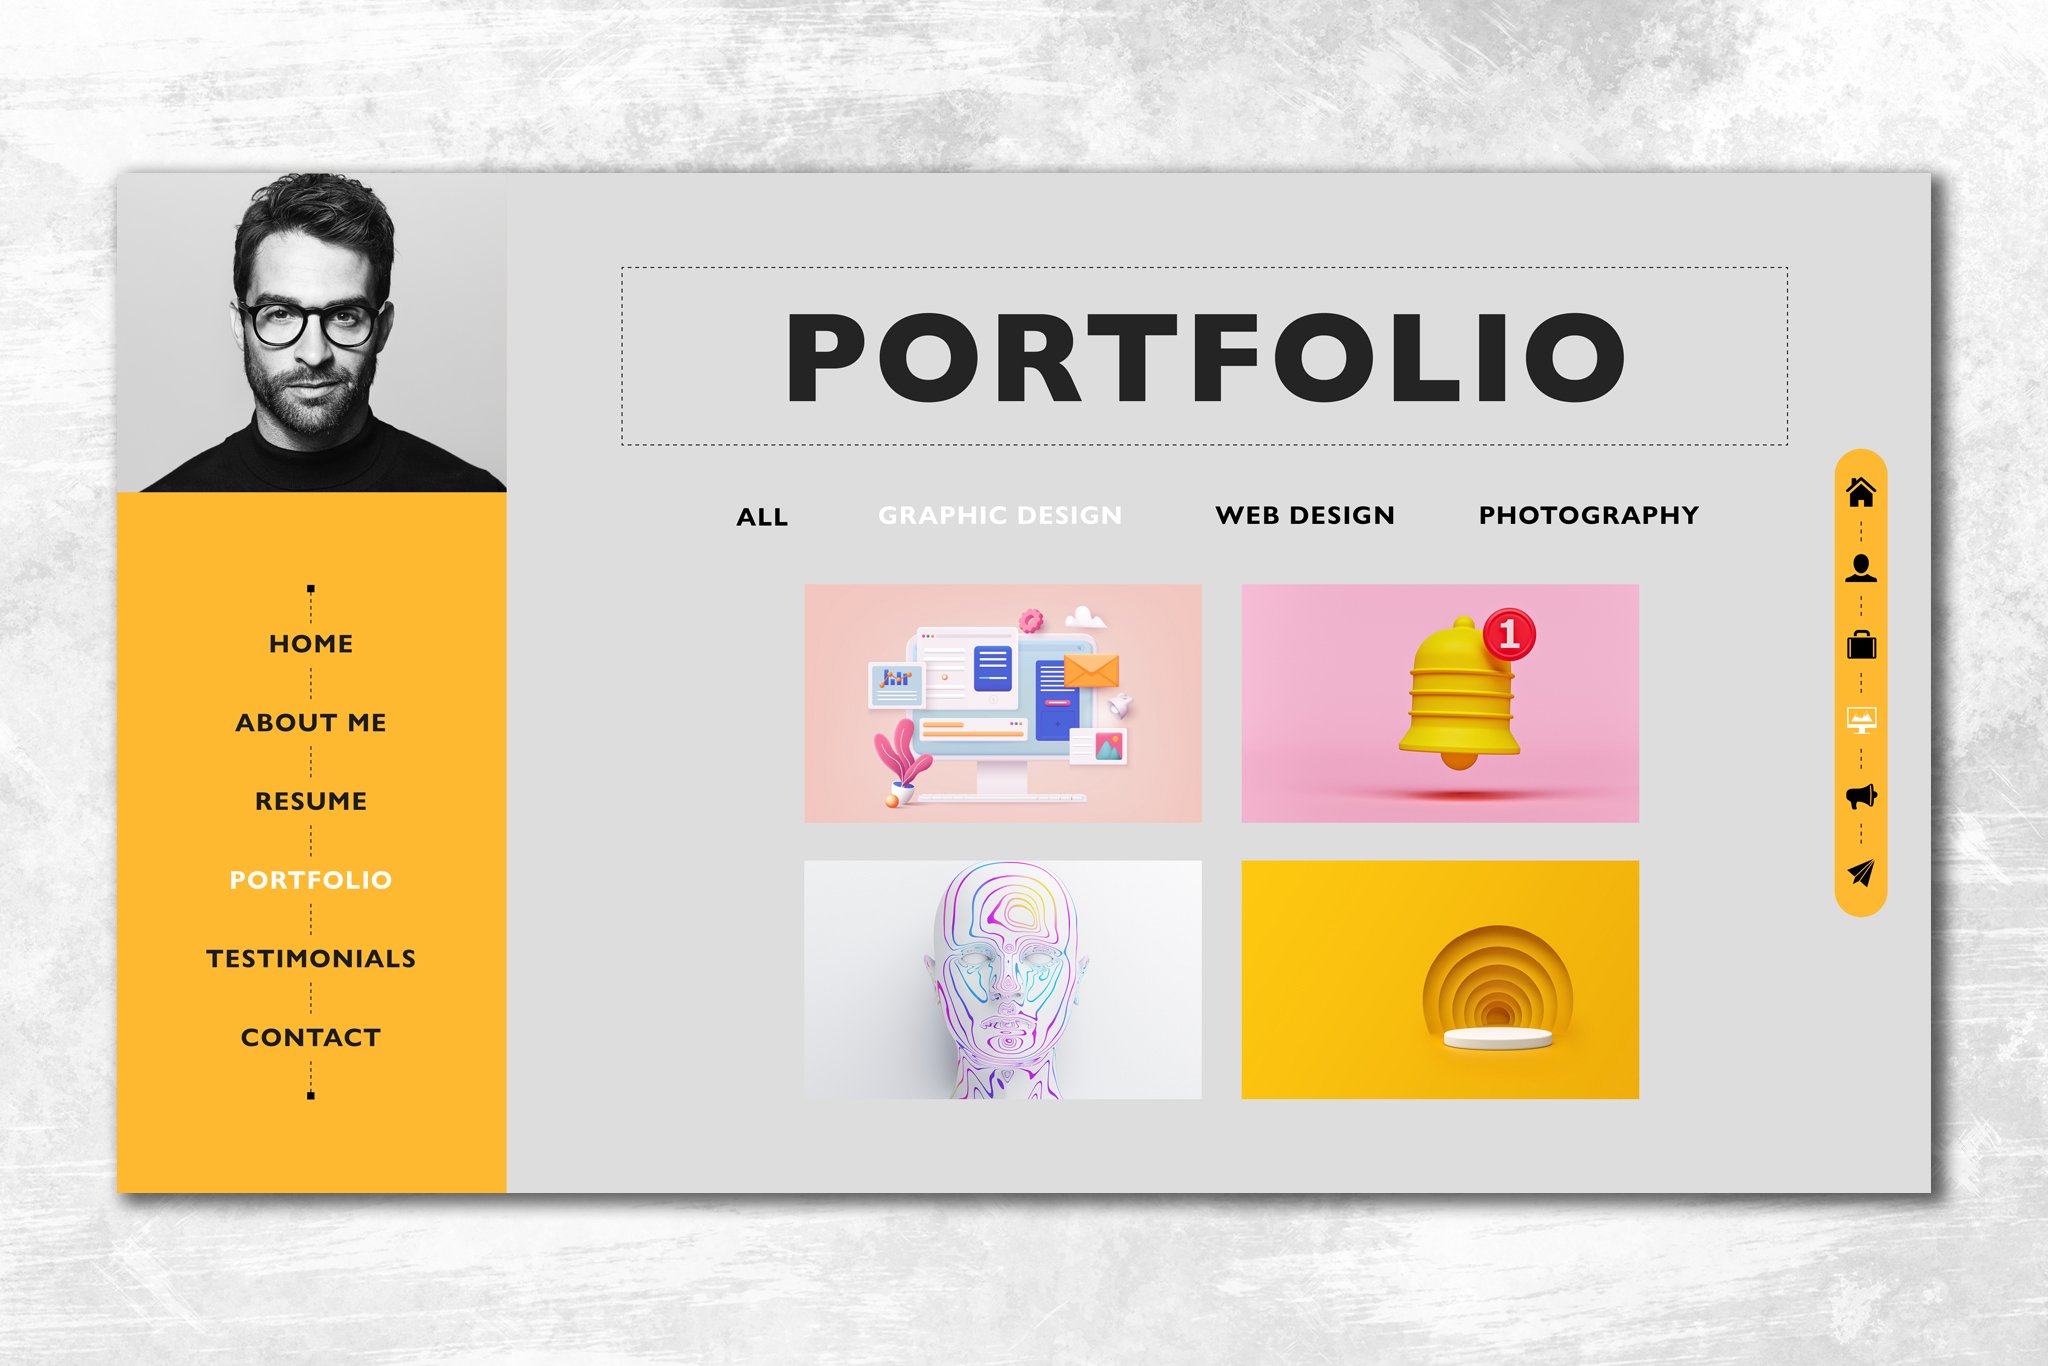 Website design for a photographer.